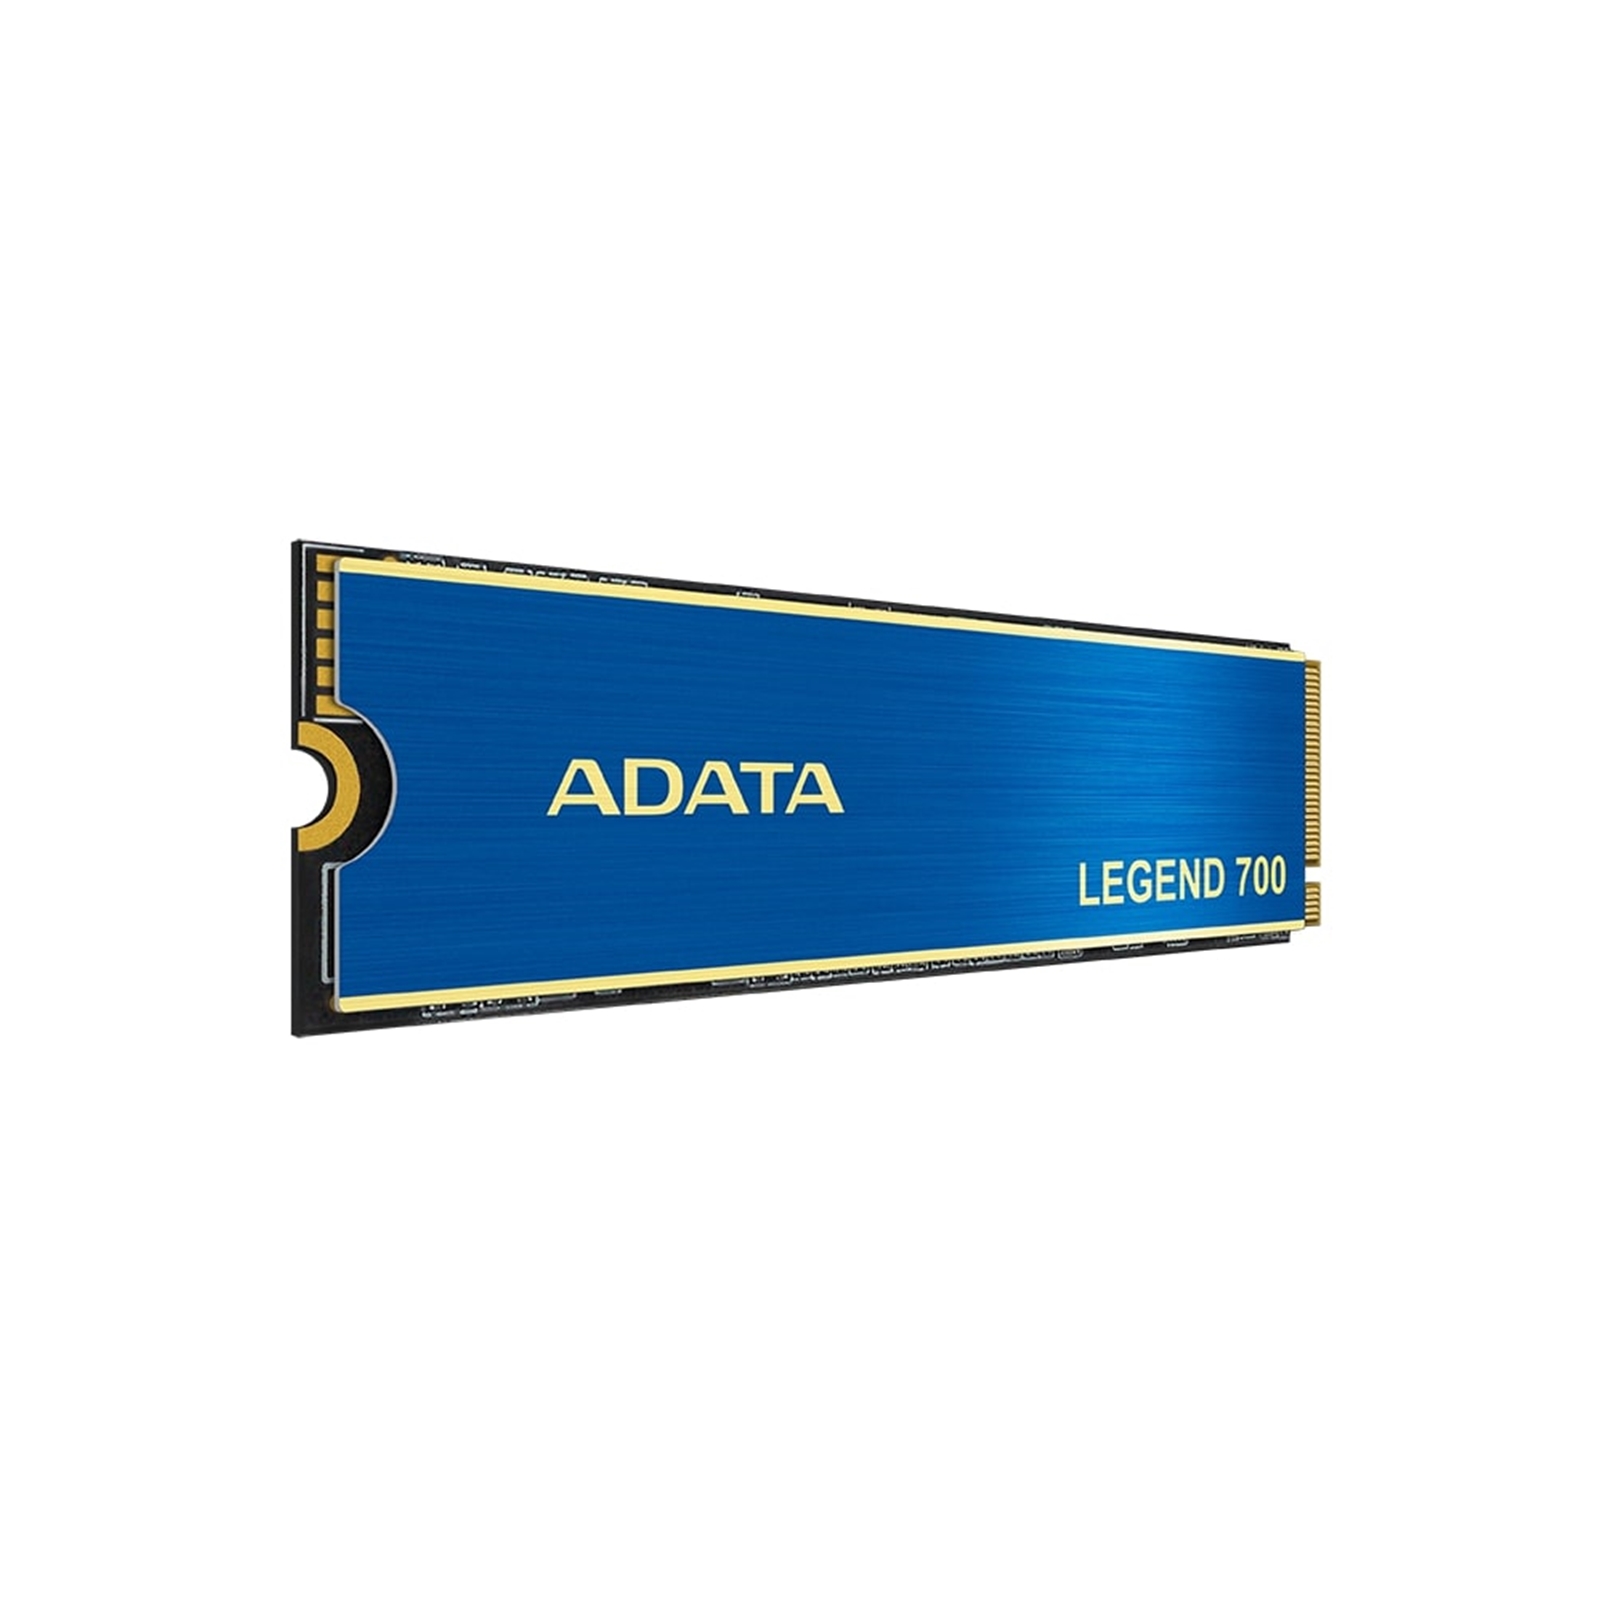 Adata Legend 700 (ALEG-700-256GCS) 256GB NVMe SSD, M.2 Interface, PCIe Gen3, 2280, Read 2000MB/s, Write 1600MB/s, Heatsink, 3 Year Warranty